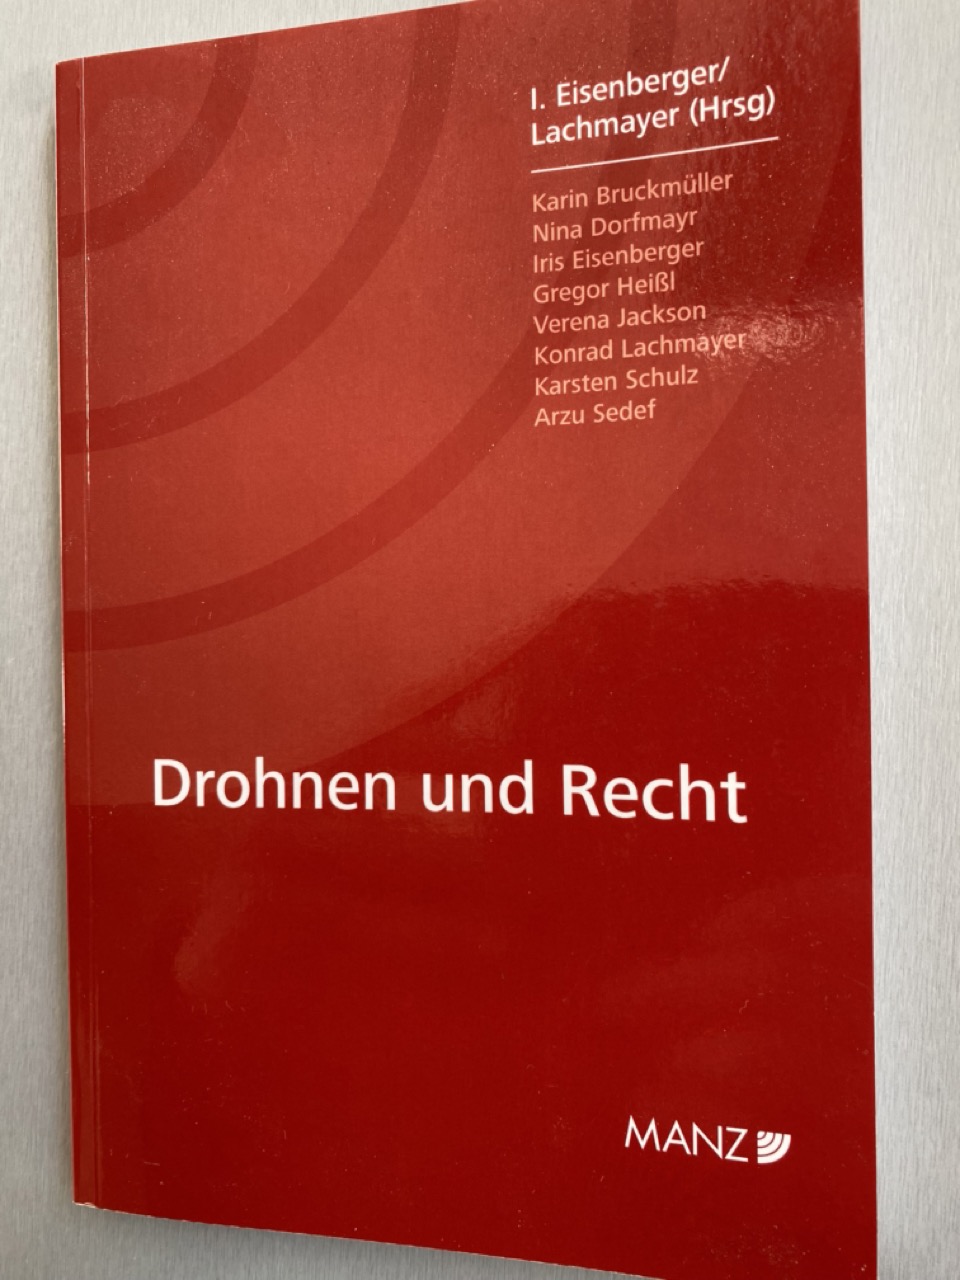 Drohnen und Recht Buch, Manz Verlag Cover